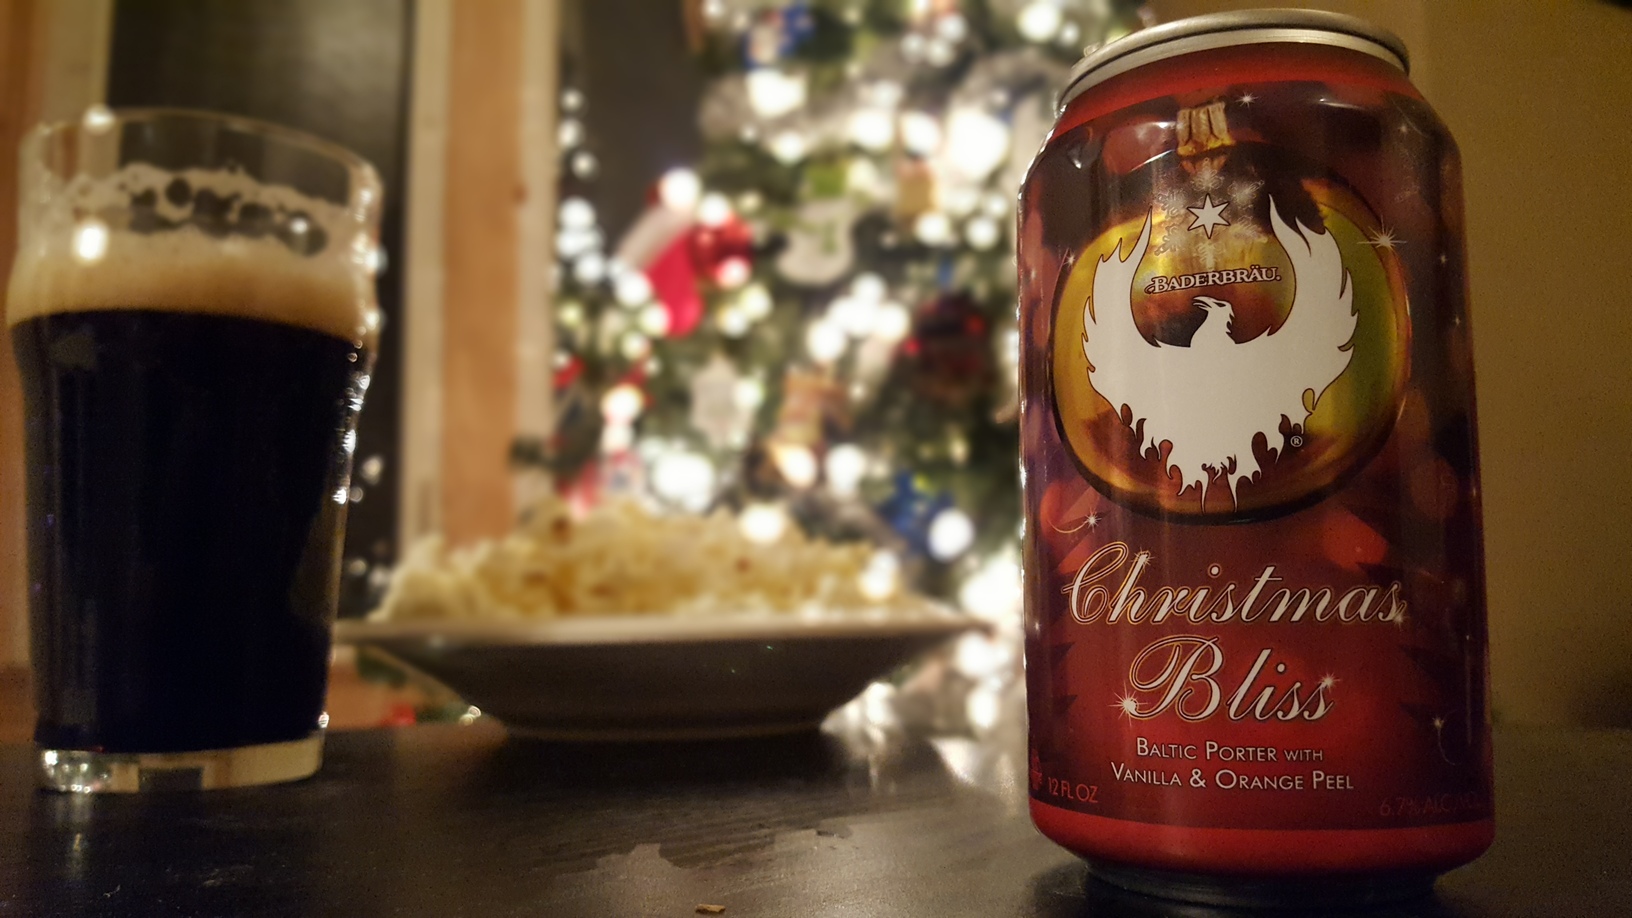 12 Beers of Christmas | Baderbräu Christmas Bliss Baltic Porter